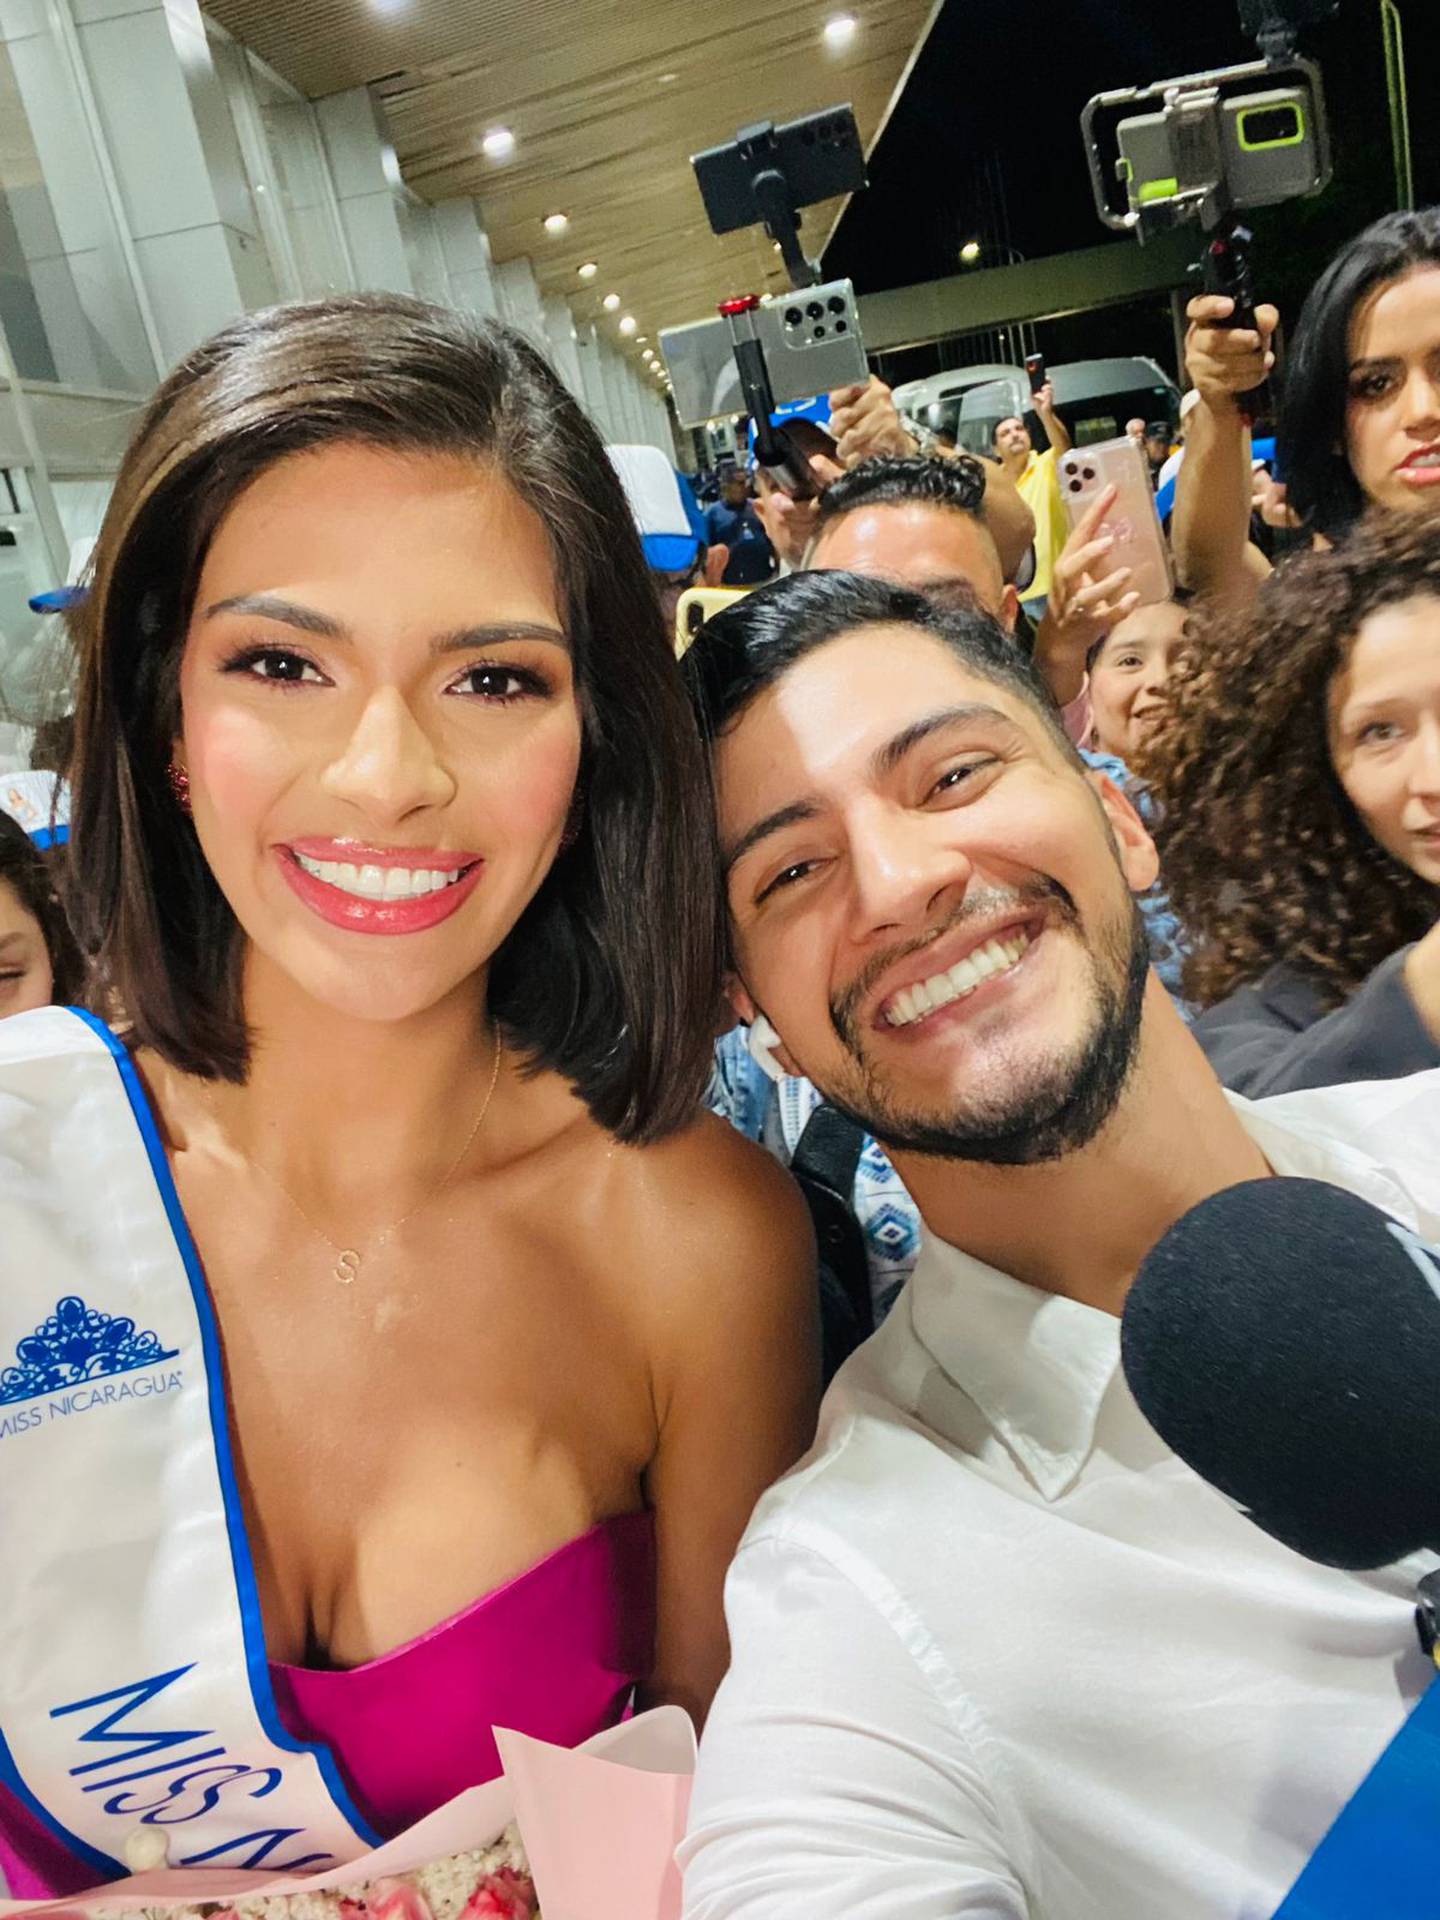 Roberto Martínez es periodista, nació en Nicaragua y se reencontró con Miss Universo Sheynnis Palacios el martes anterior en Costa Rica.